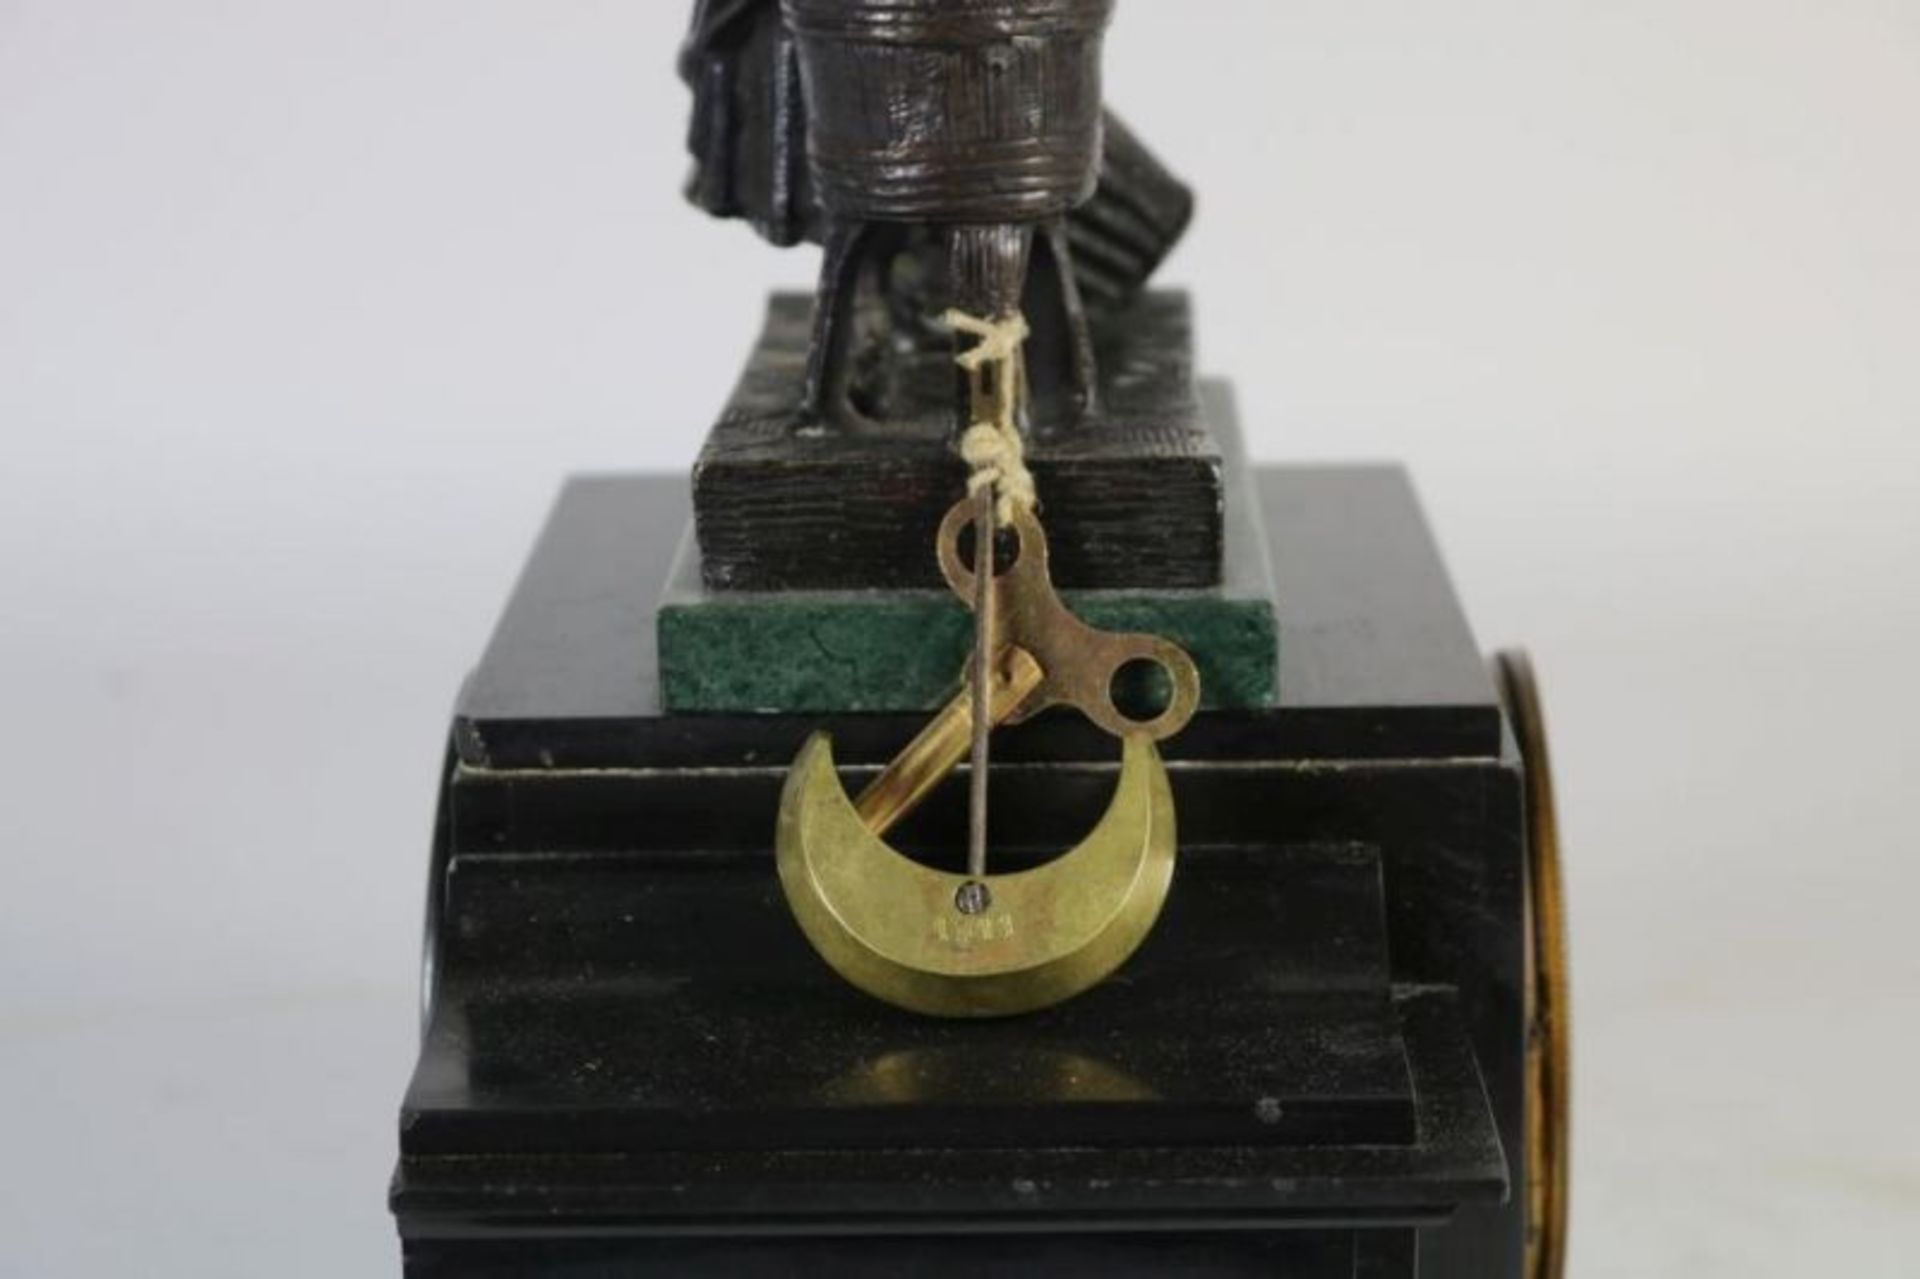 Pendule in zwart marmeren kast bekroond met wasvrouw, Frankrijk 19e eeuw, h. 40 cm. - Bild 2 aus 3